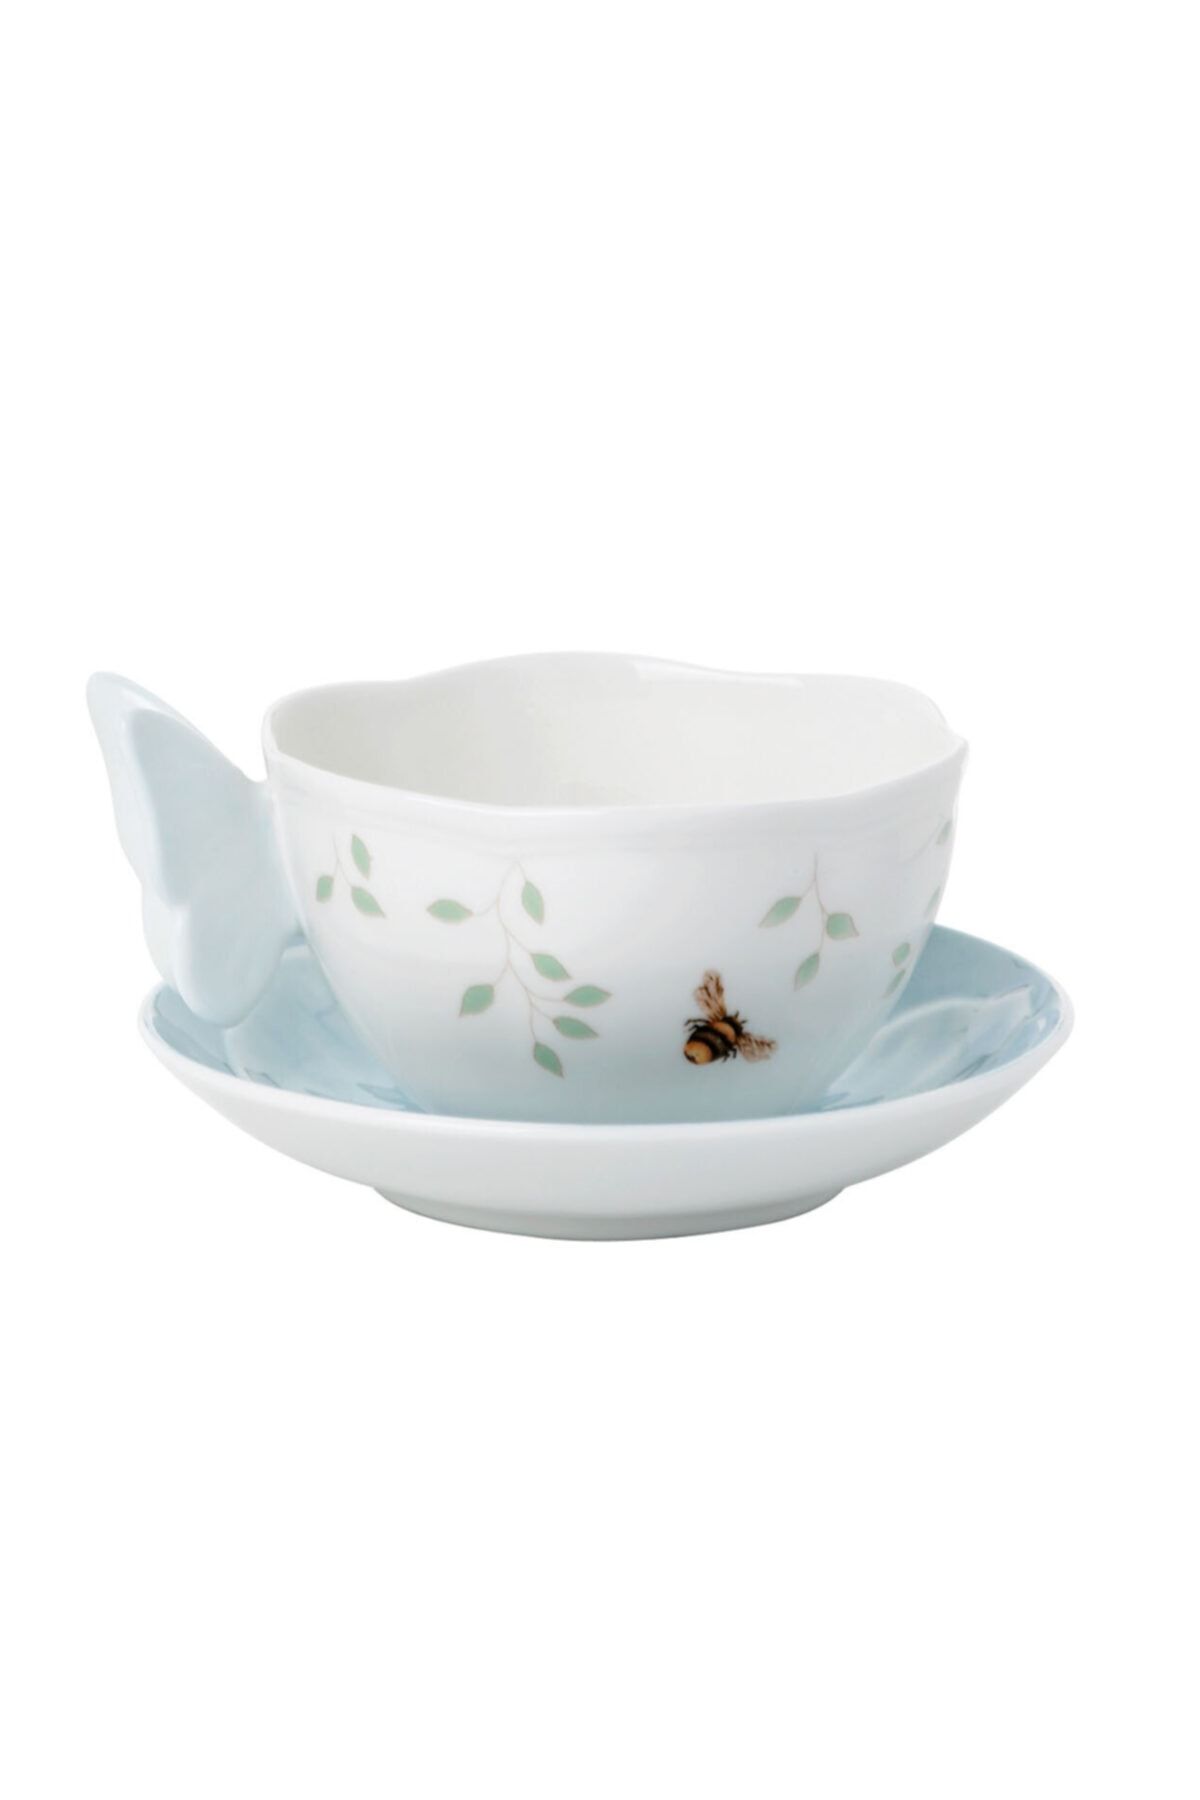 Lenox Butterfly C Kahve/çay Fincan Ve Tabağı